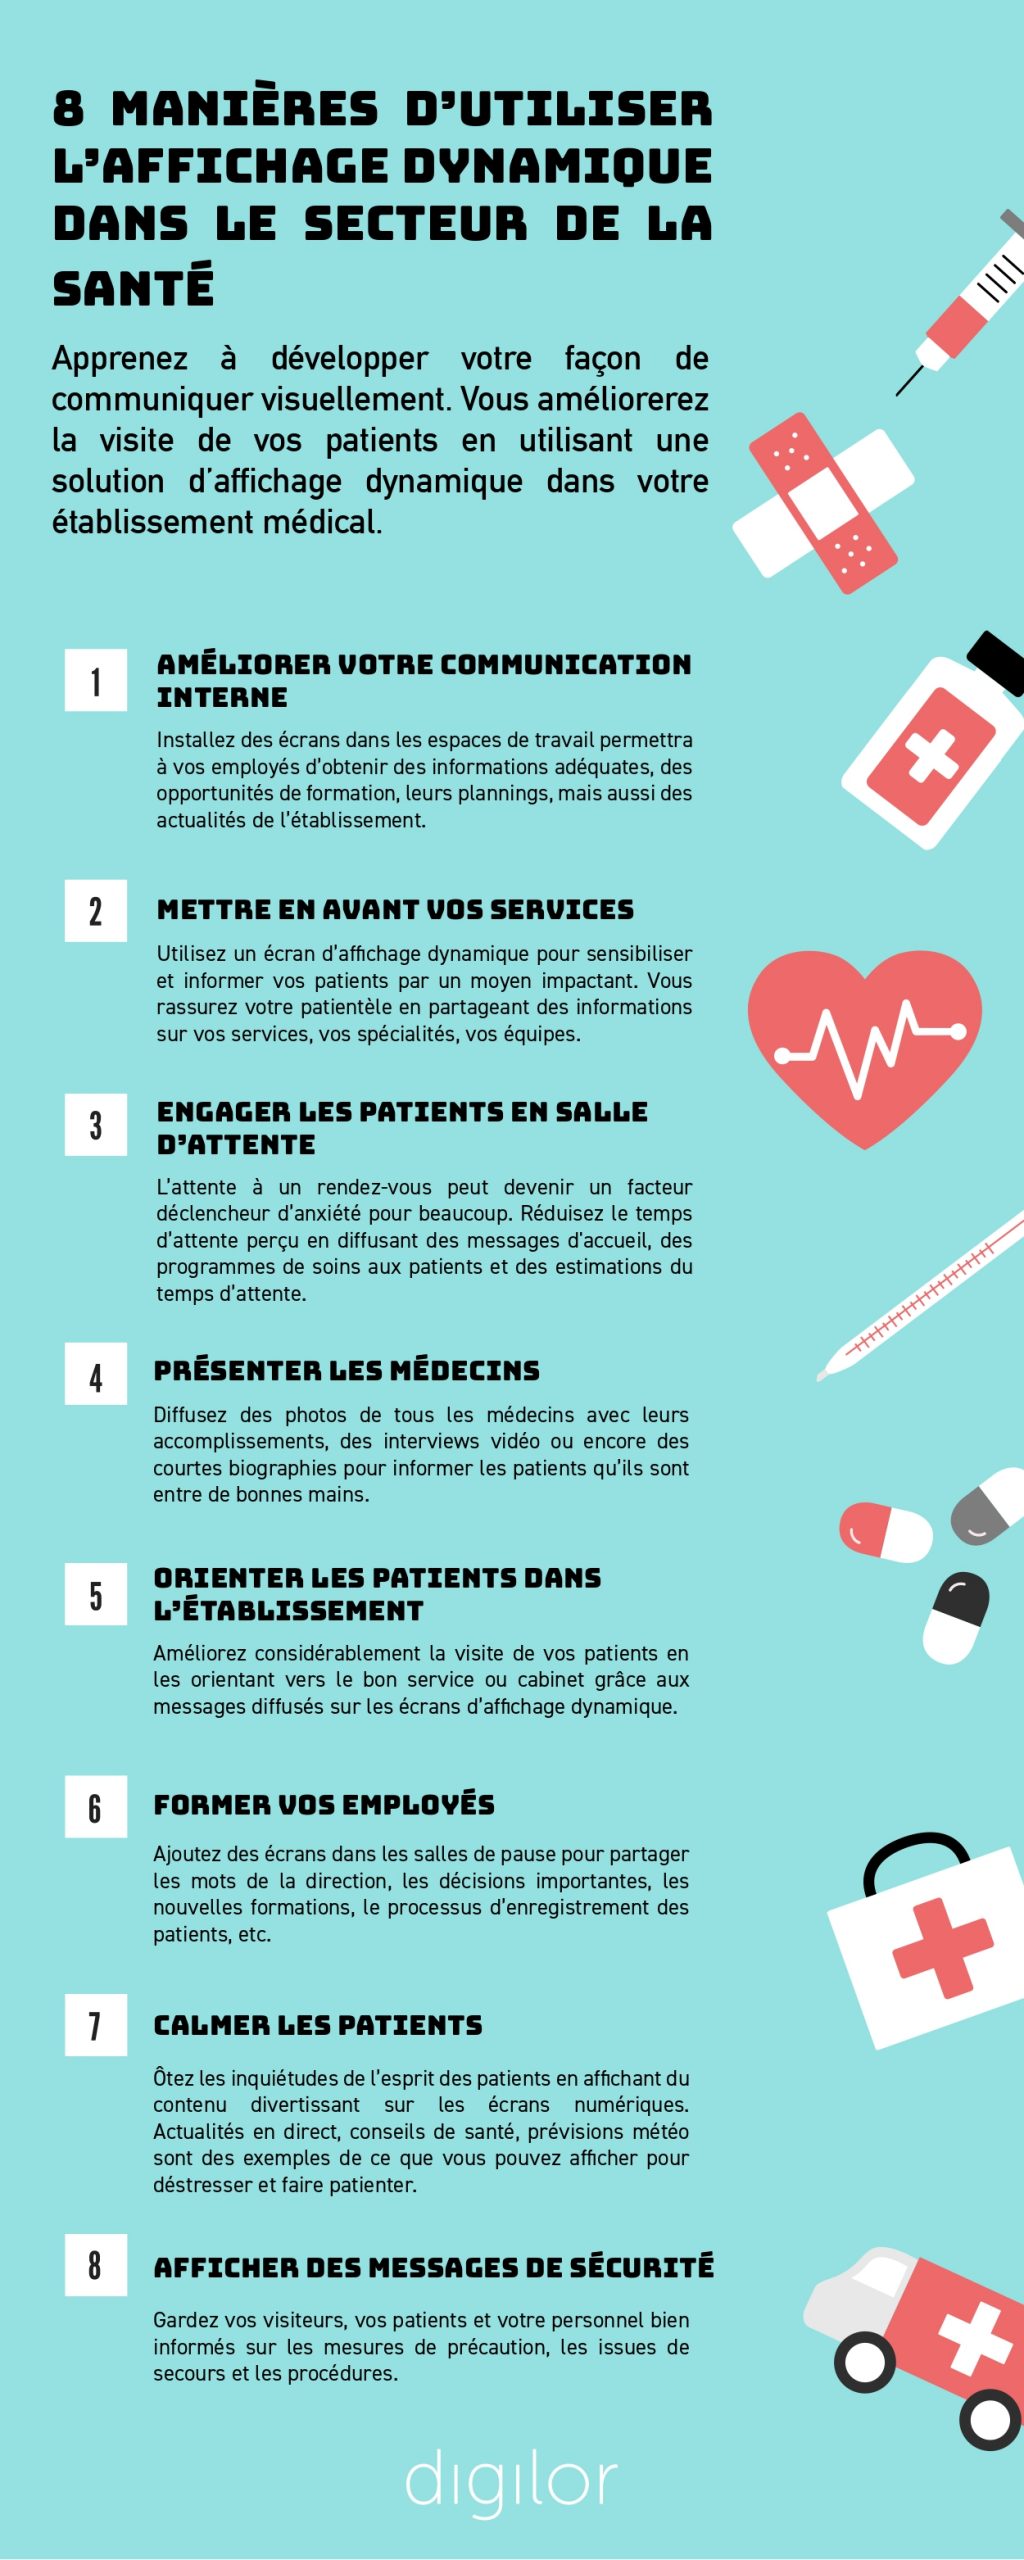 8 manières d’utiliser l’affichage dynamique dans le secteur de la santé